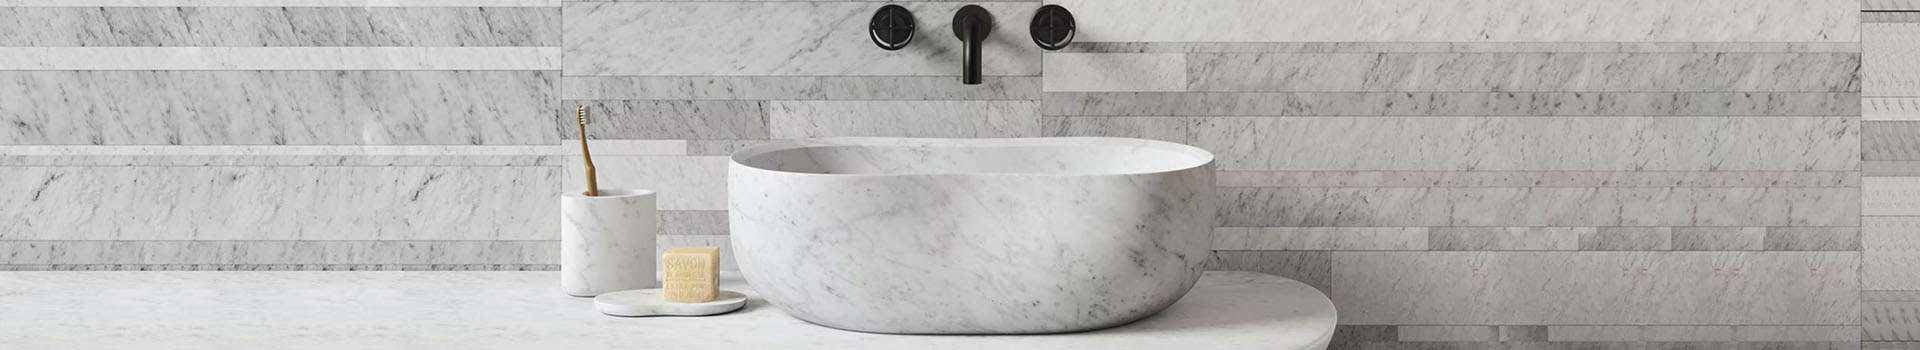 Marbles in Bathroom Sink,Marbles in Bathroom Sink